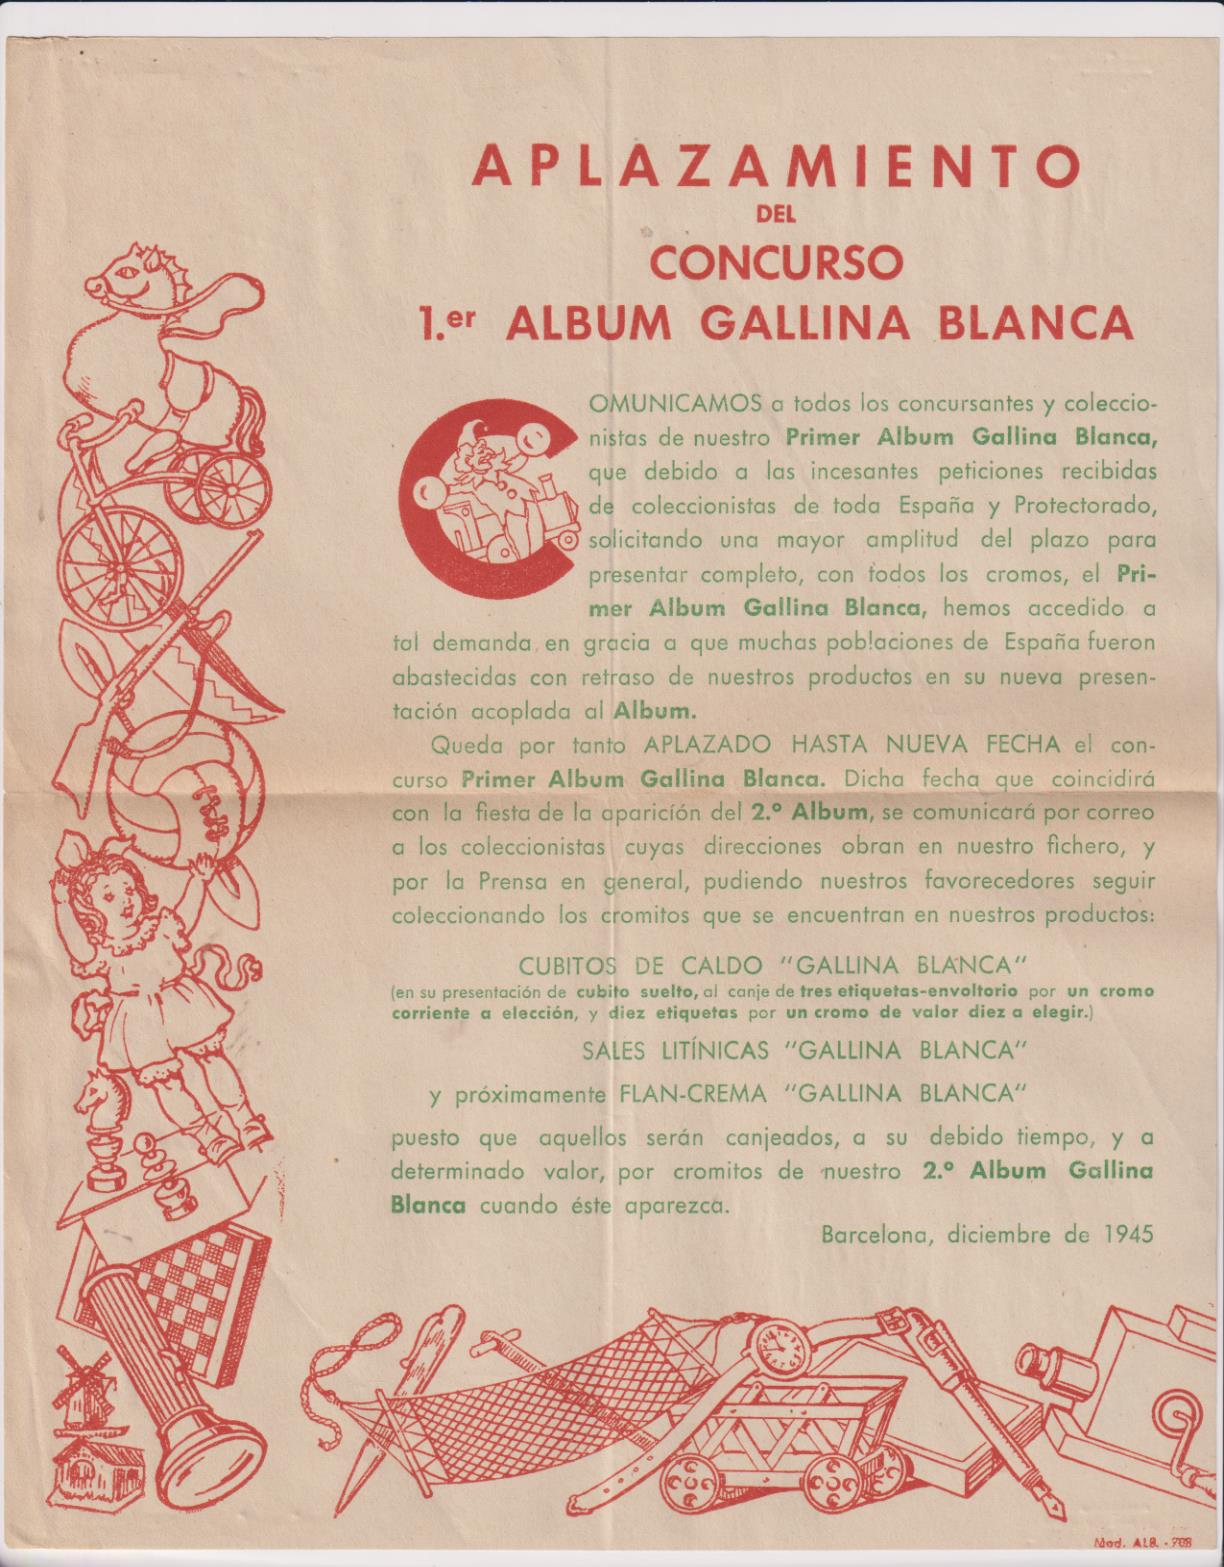 Aplazamiento del Concurso Primer Álbum Gallina Blanca. Barcelona Diciembre de 1945 de 1946